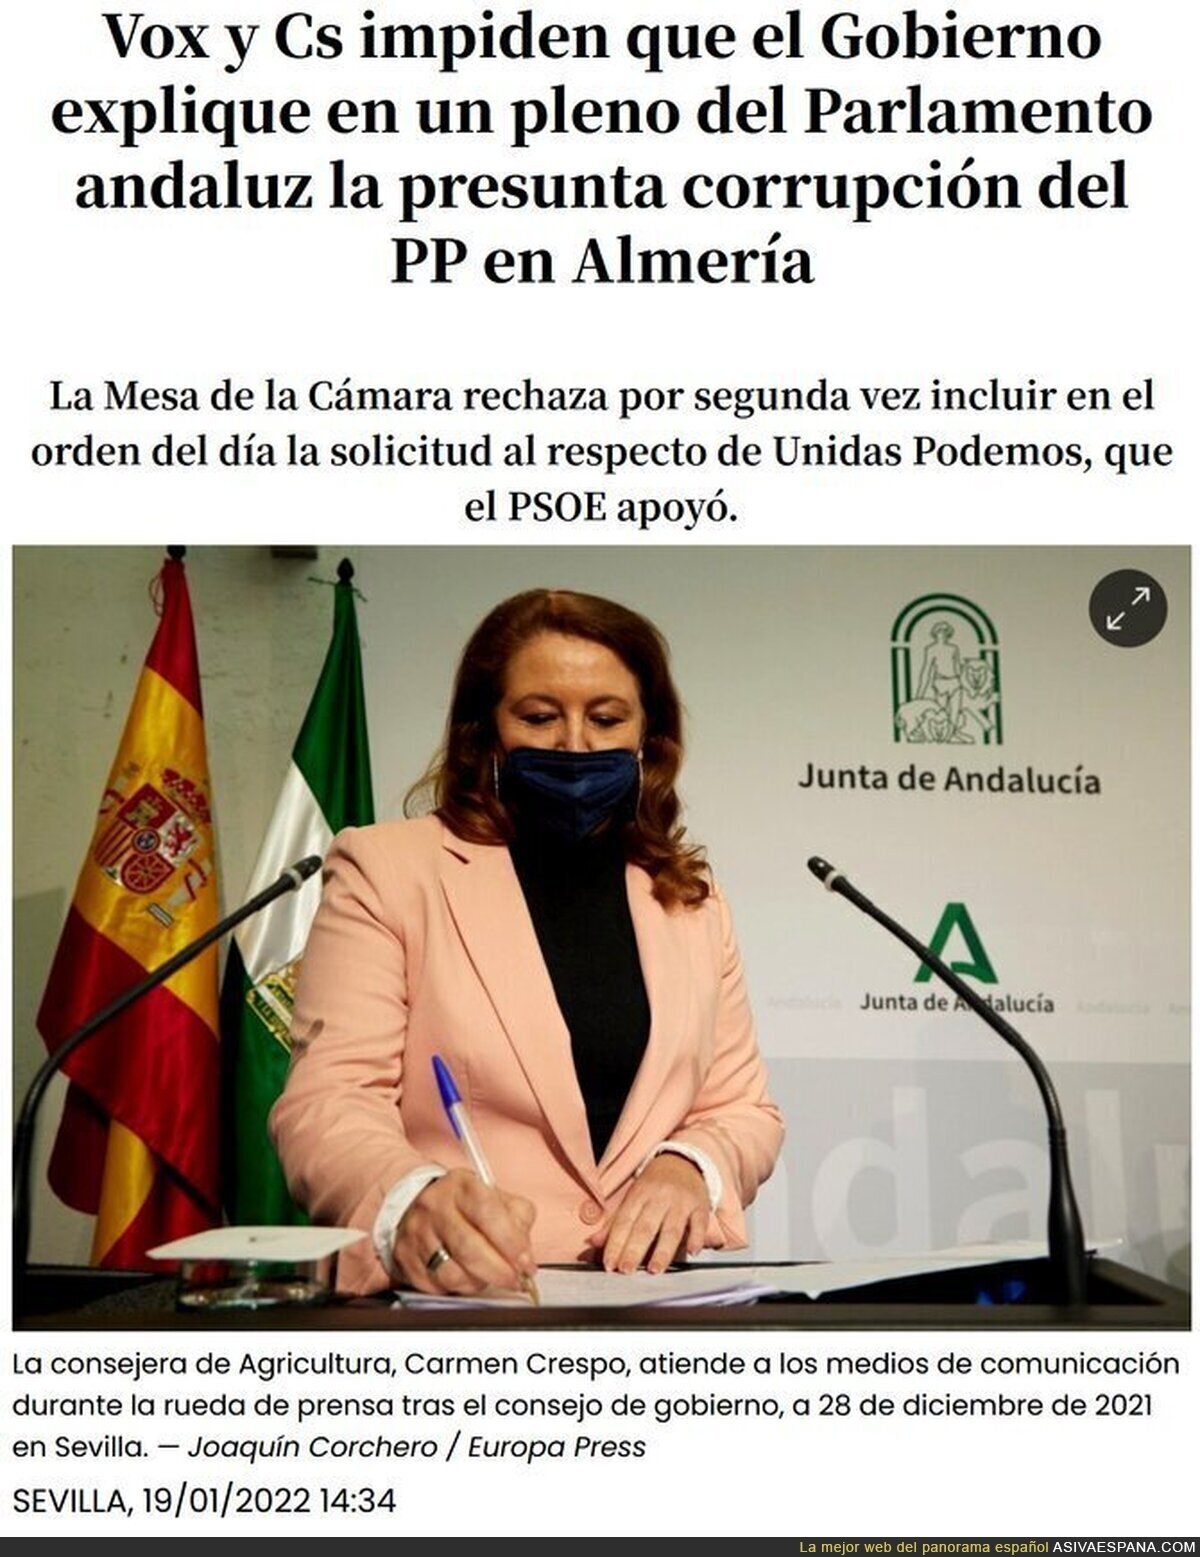 El gobierno del cambio en Andalucía